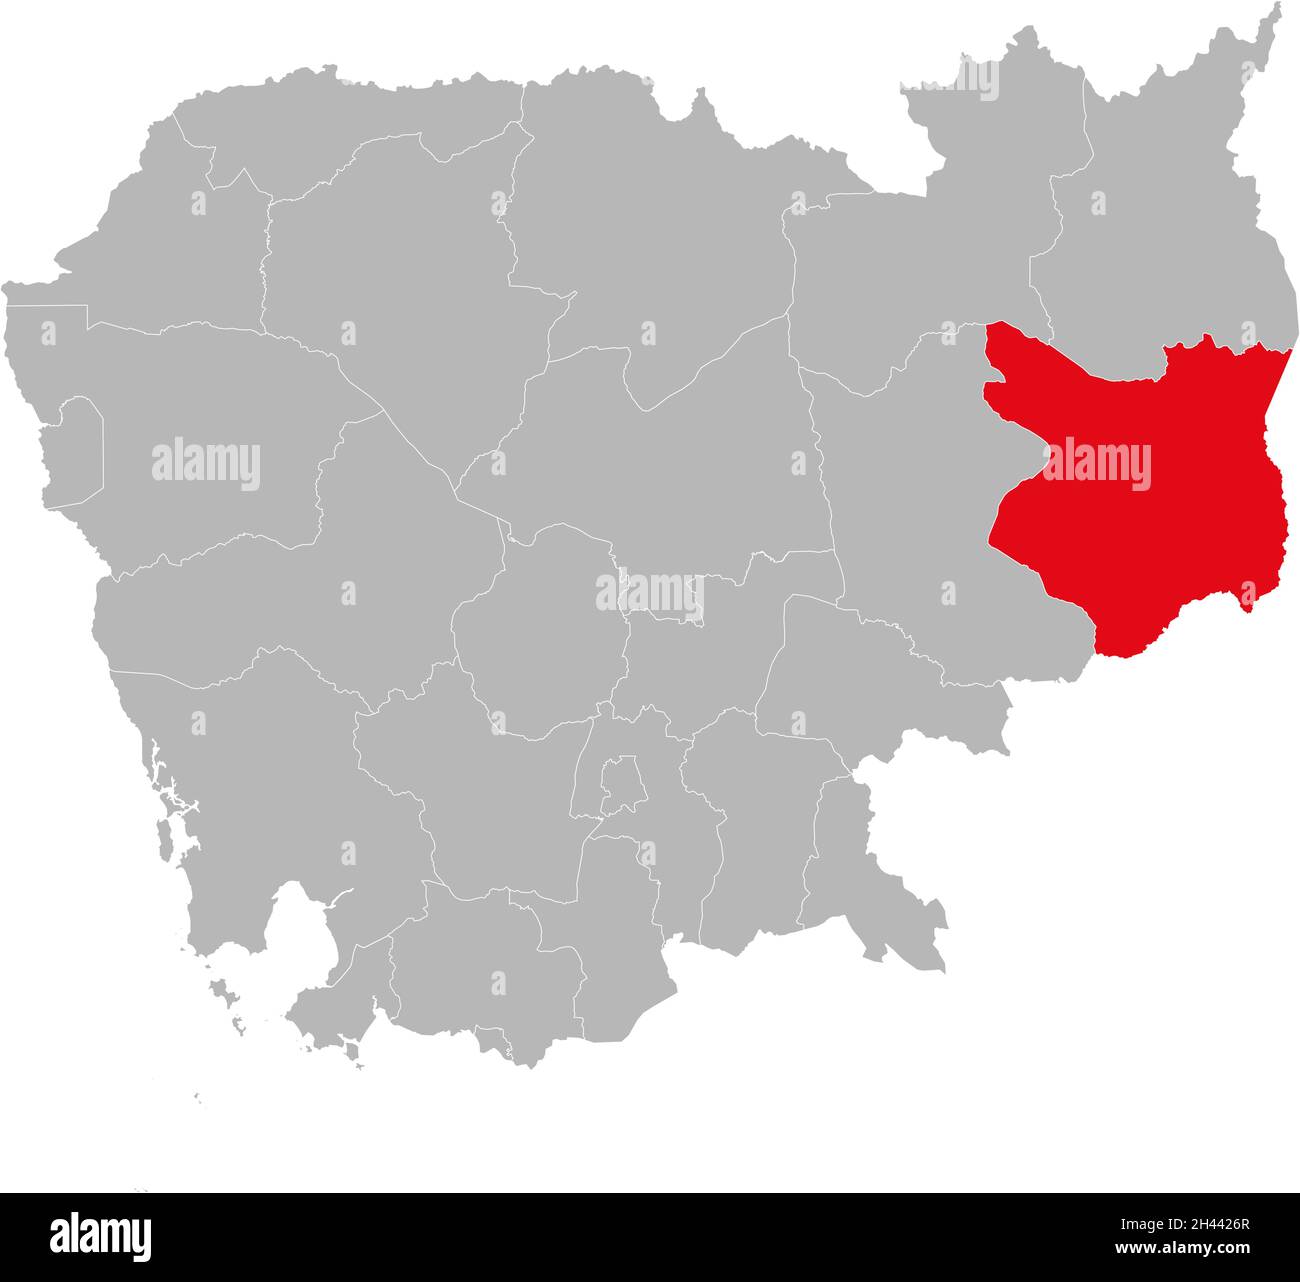 Mondulkiri Provinz isolierte kambodscha Karte. Grauer Hintergrund. Geschäftskonzepte und -Hintergründe. Stock Vektor